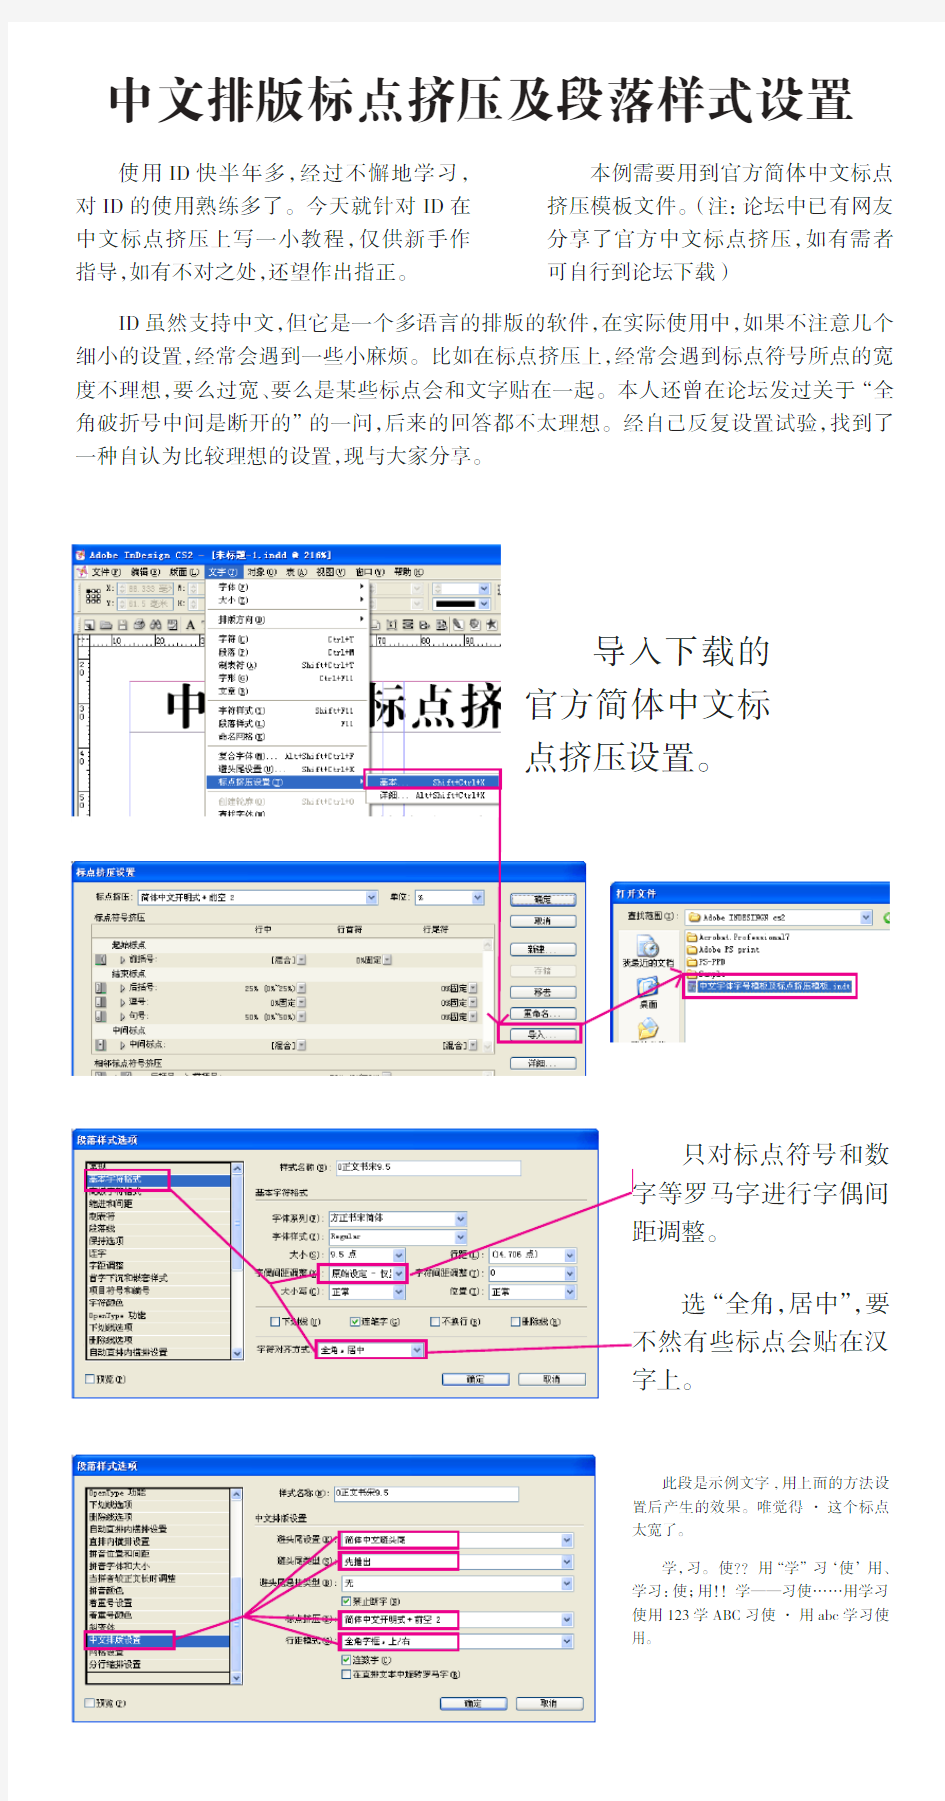 中文排版标点挤压及段落样式设置